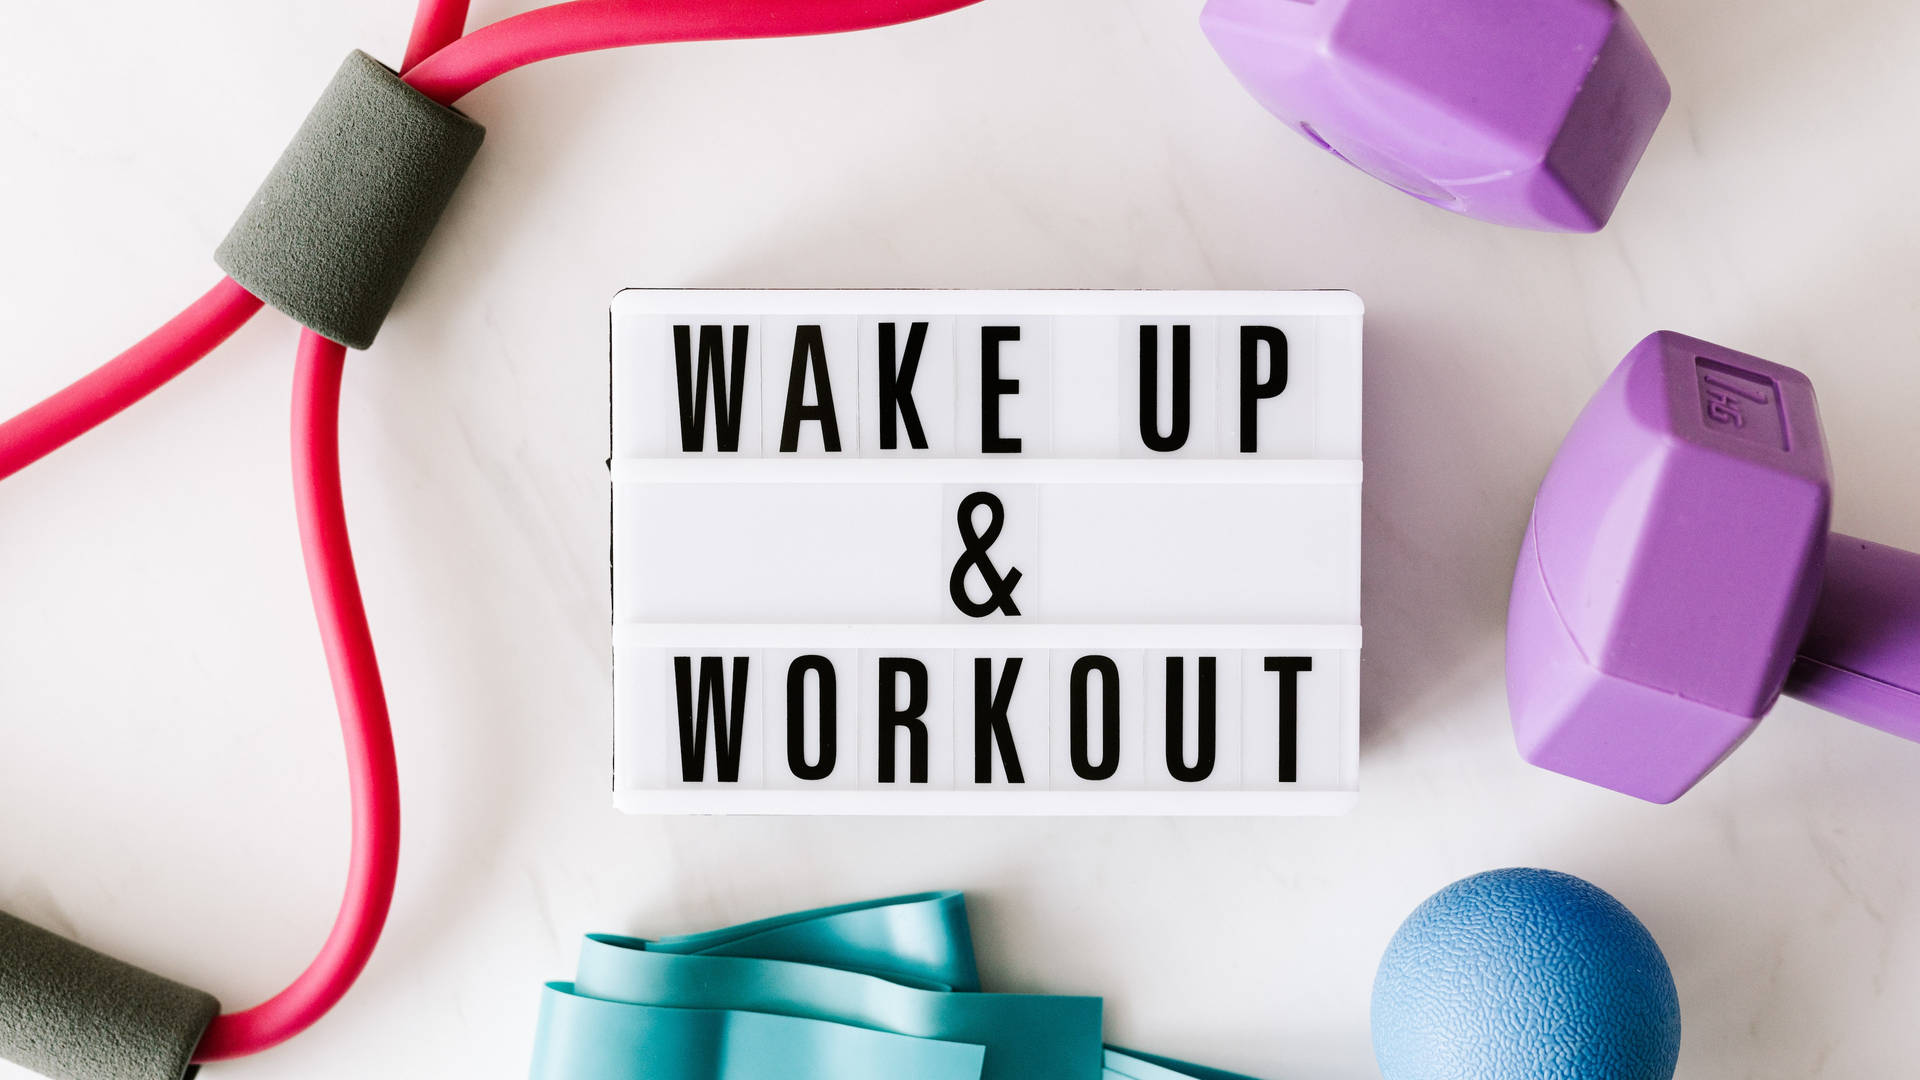 Wake Up 4k Ultra Hd Motivational